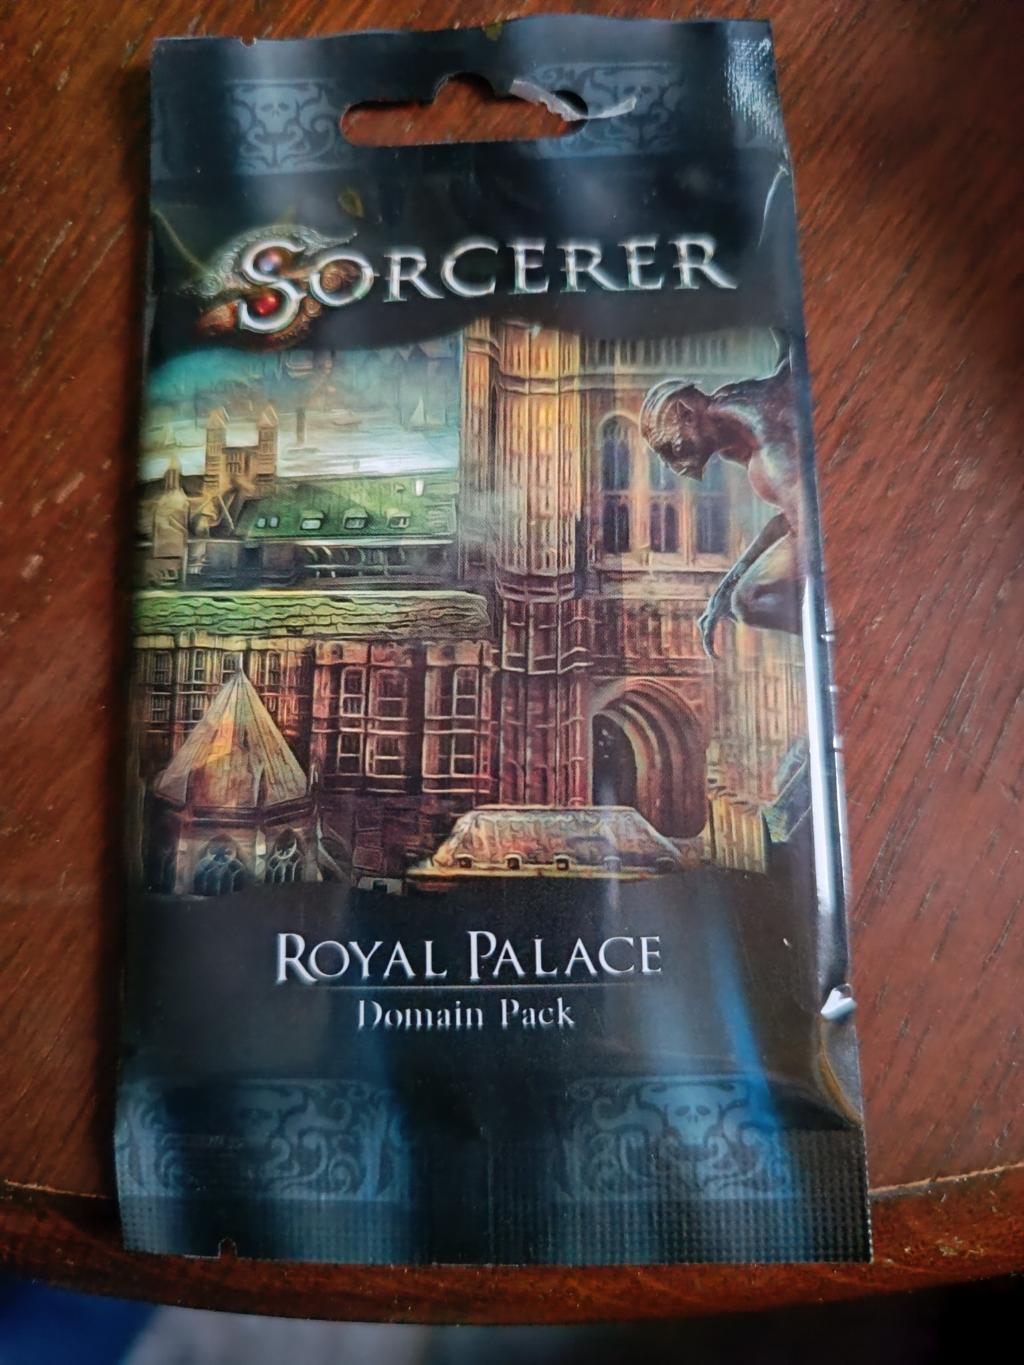 Sorcerer - Royal Palace Domain Pack